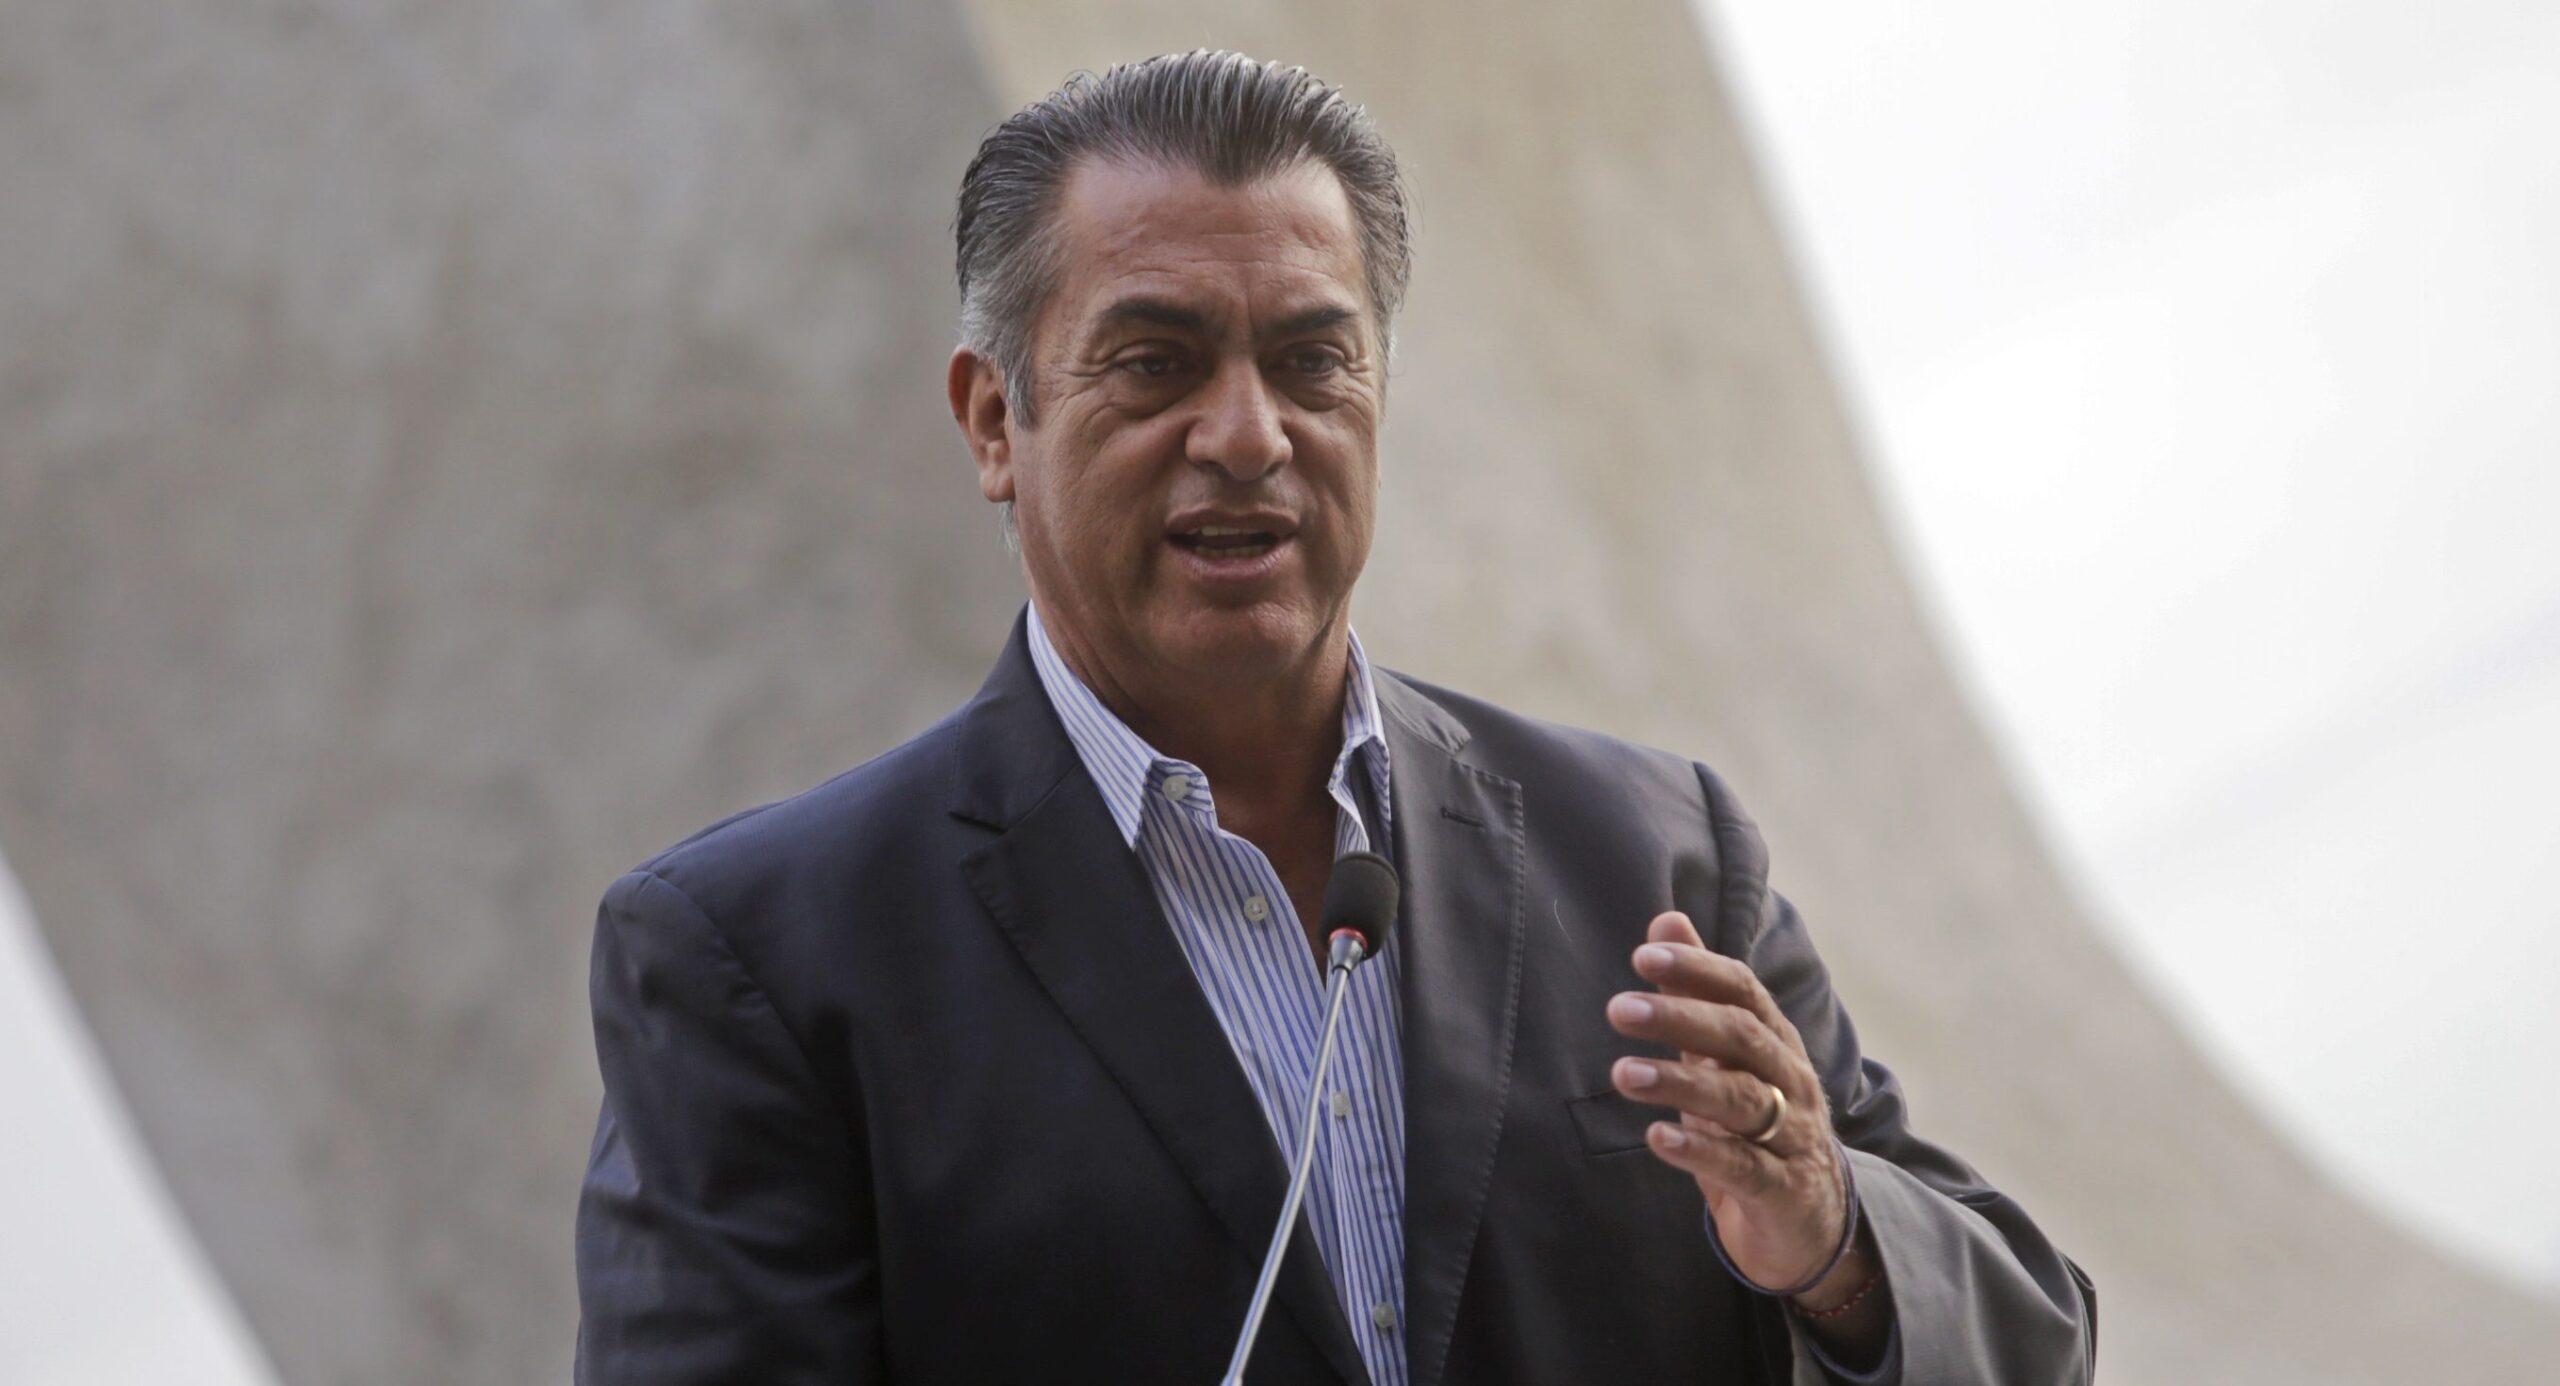 Jaime Rodríguez, El Bronco, se registrará como precandidato independiente para 2018